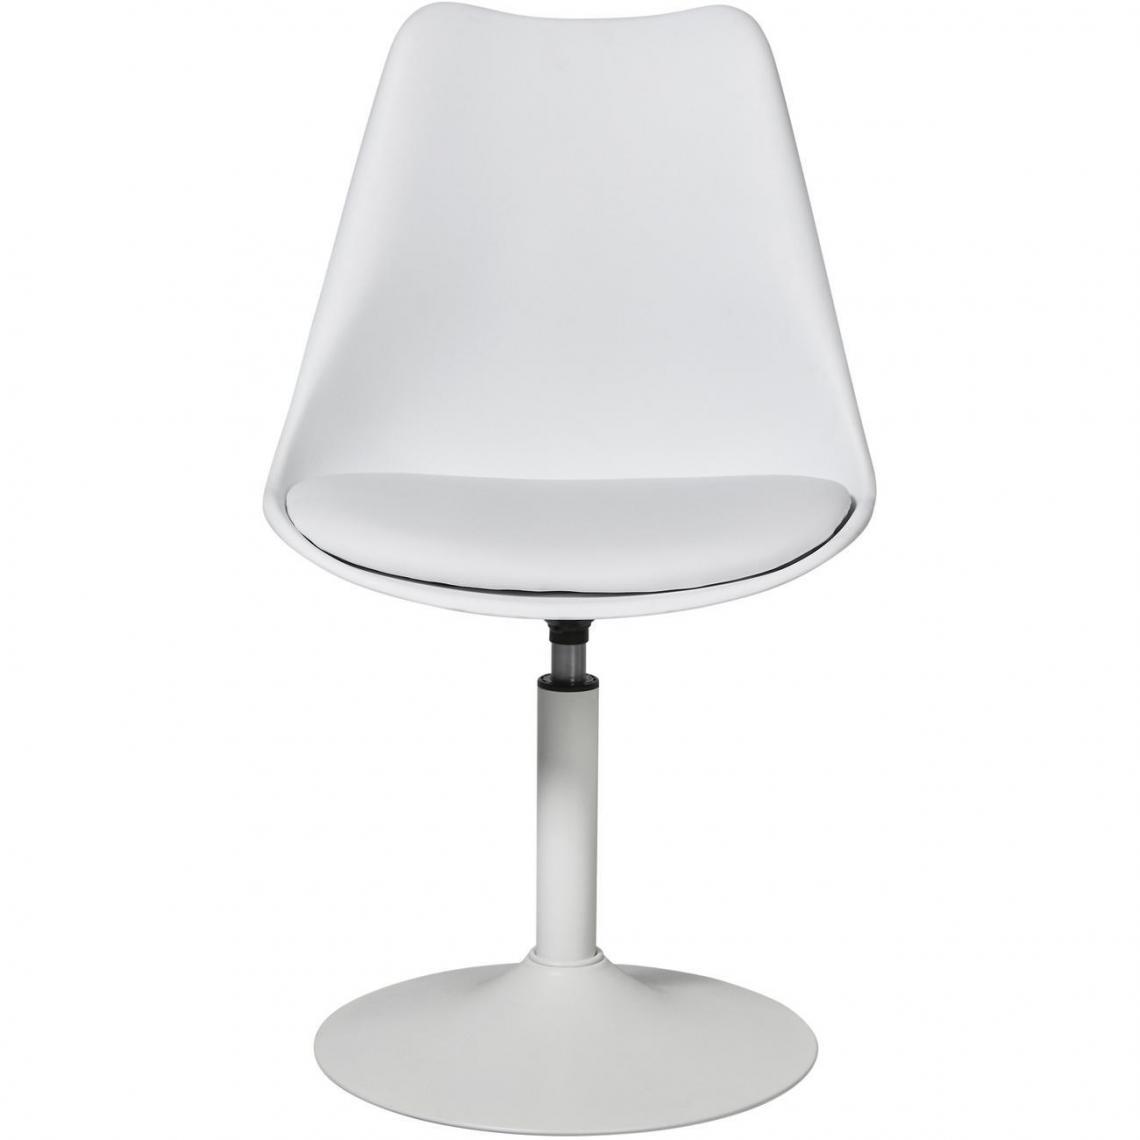 ATHM DESIGN - Lot de 2 - Chaise MARKLE Blanc - assise Plastique dur ABS pieds Metal - Chaises